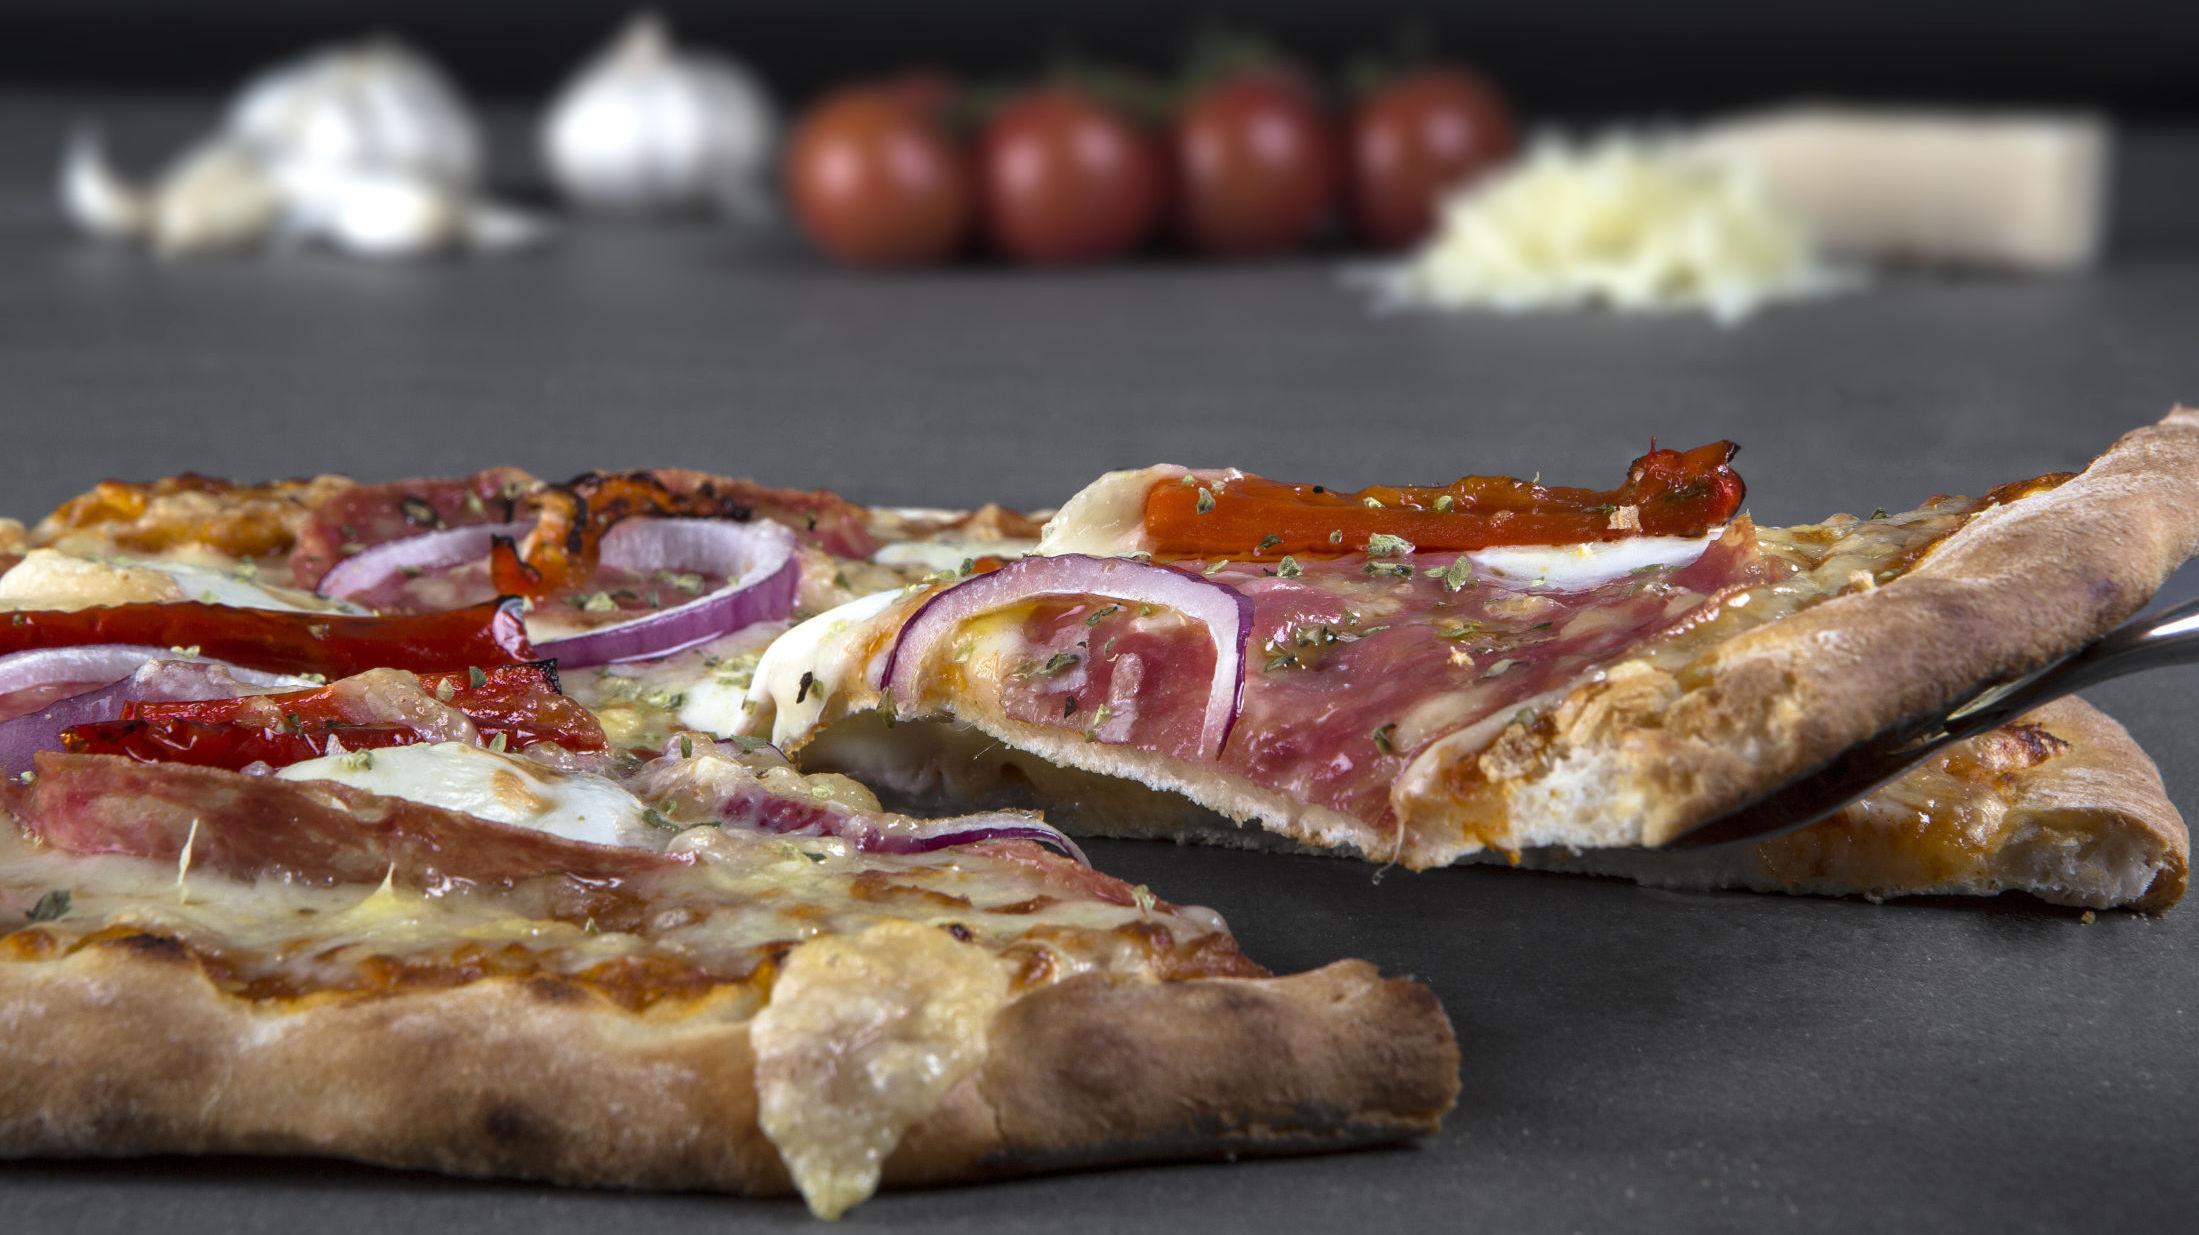 SMAKEN AV ITALIA: Ved å grille pizza får du den sprøe og gode bunnen, samt saftige smaken som en ekte italiensk pizza. Foto: Thomas Fredriksen